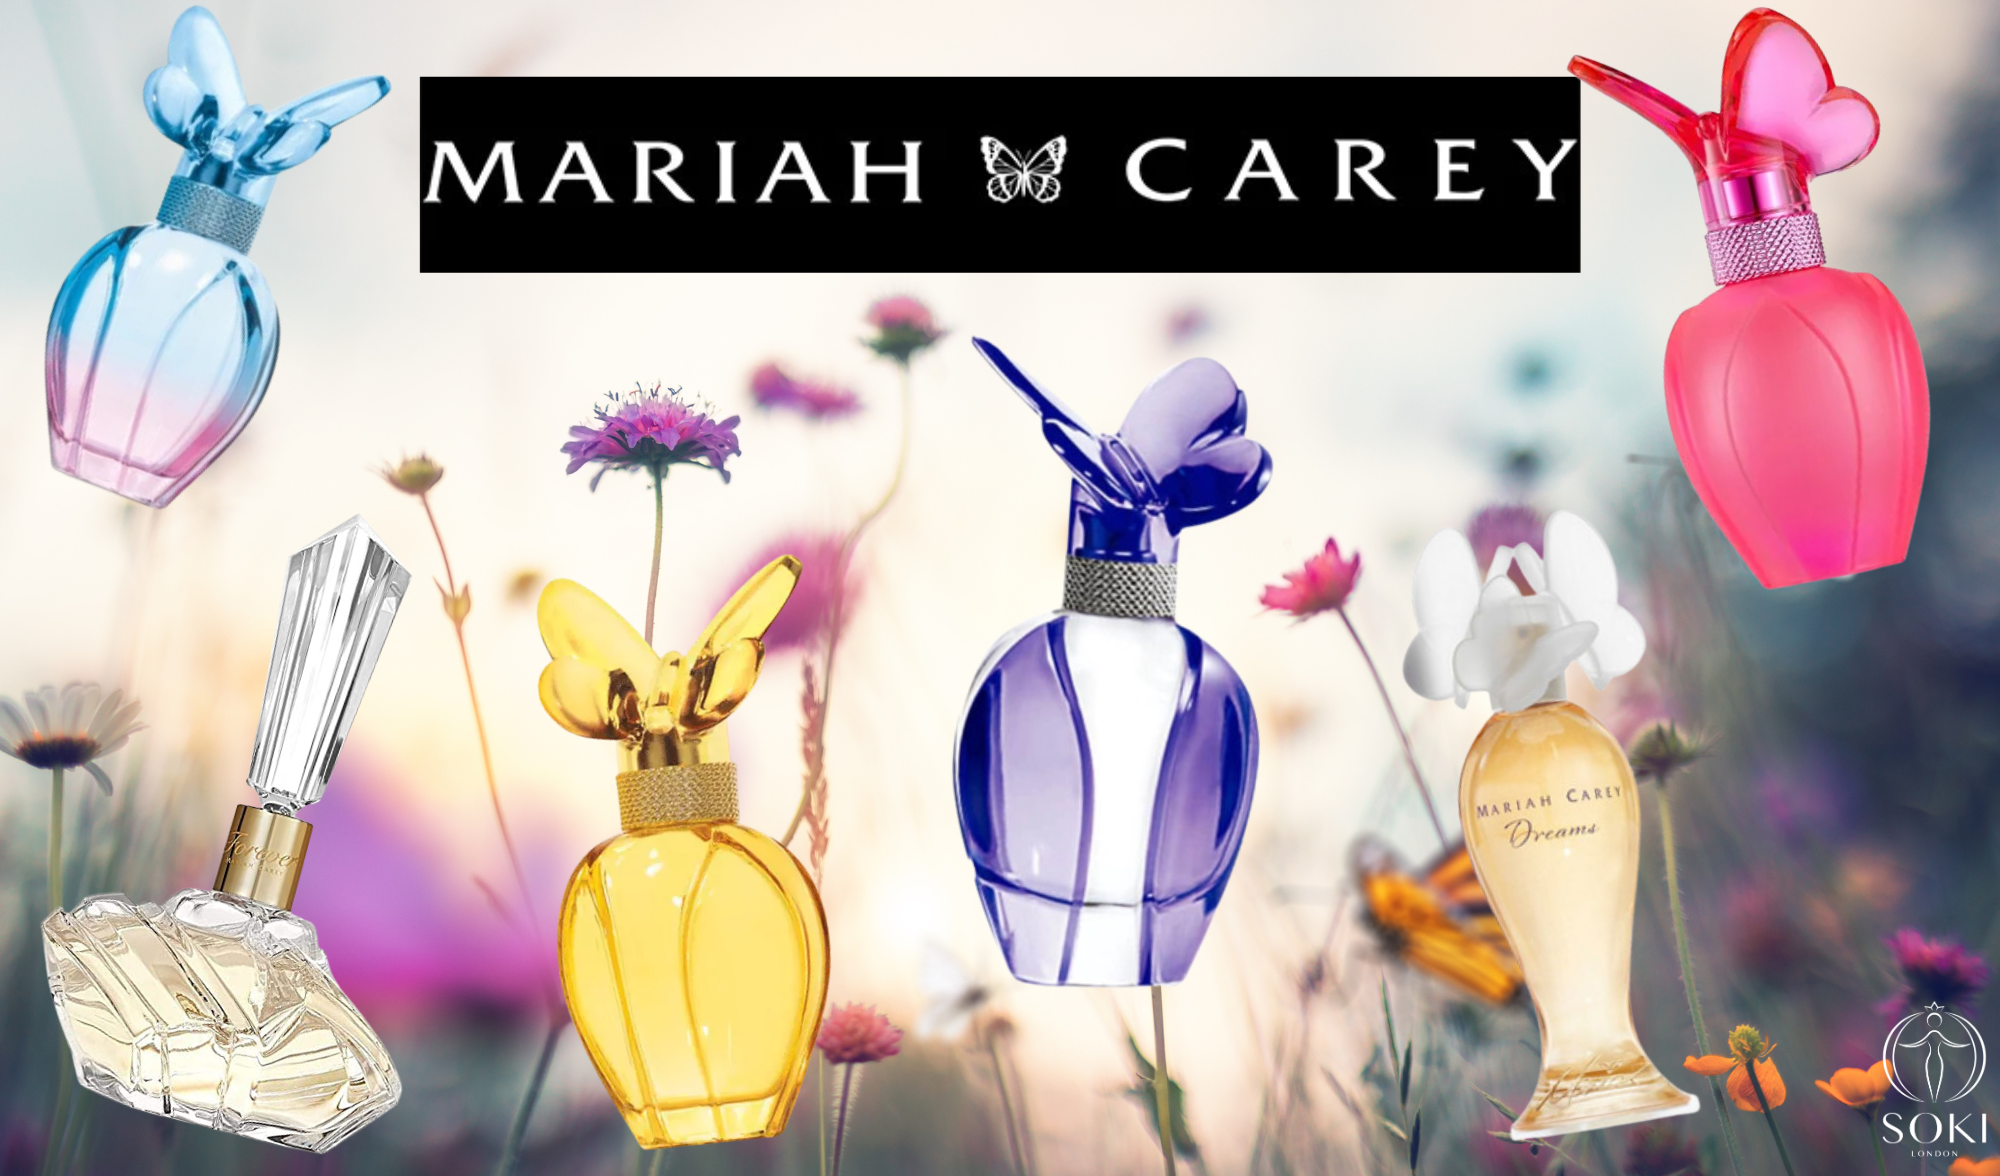 Hướng dẫn cơ bản về nước hoa Mariah Carey